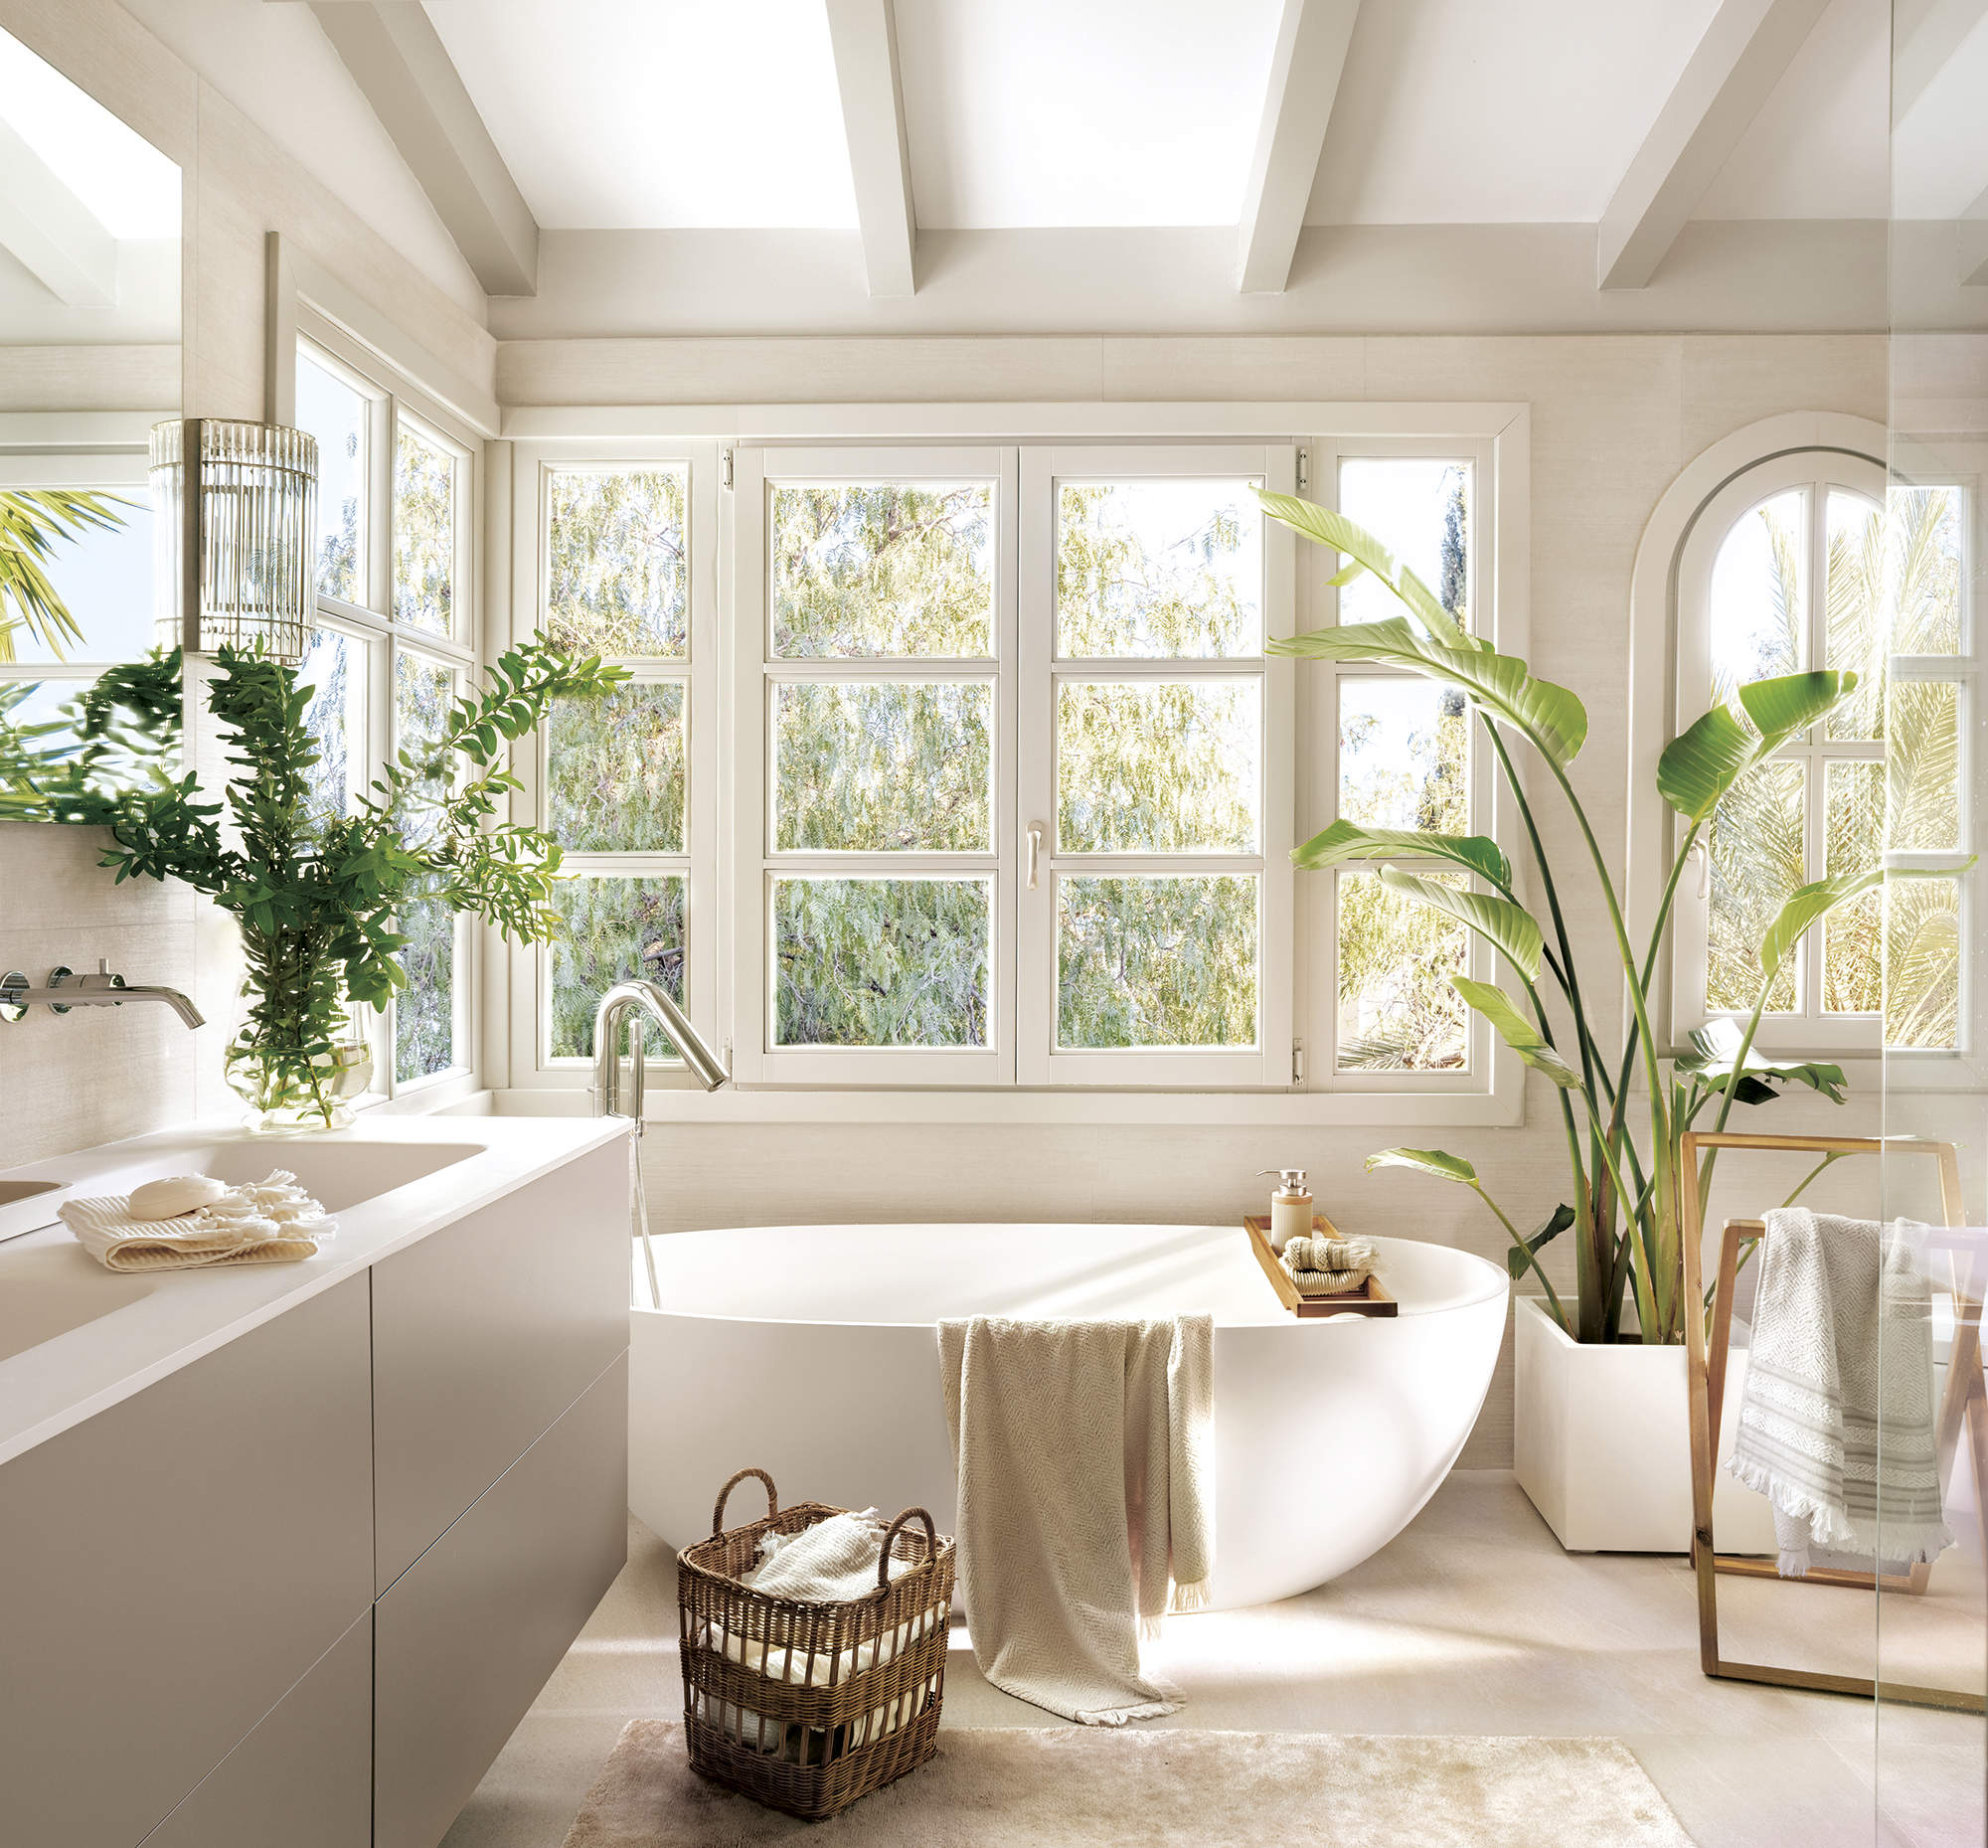 baño grande con bañera externa blanca y mueble de lavabo de dos senos, plantas, suelo de piedra con alfombra beige, gran ventanal